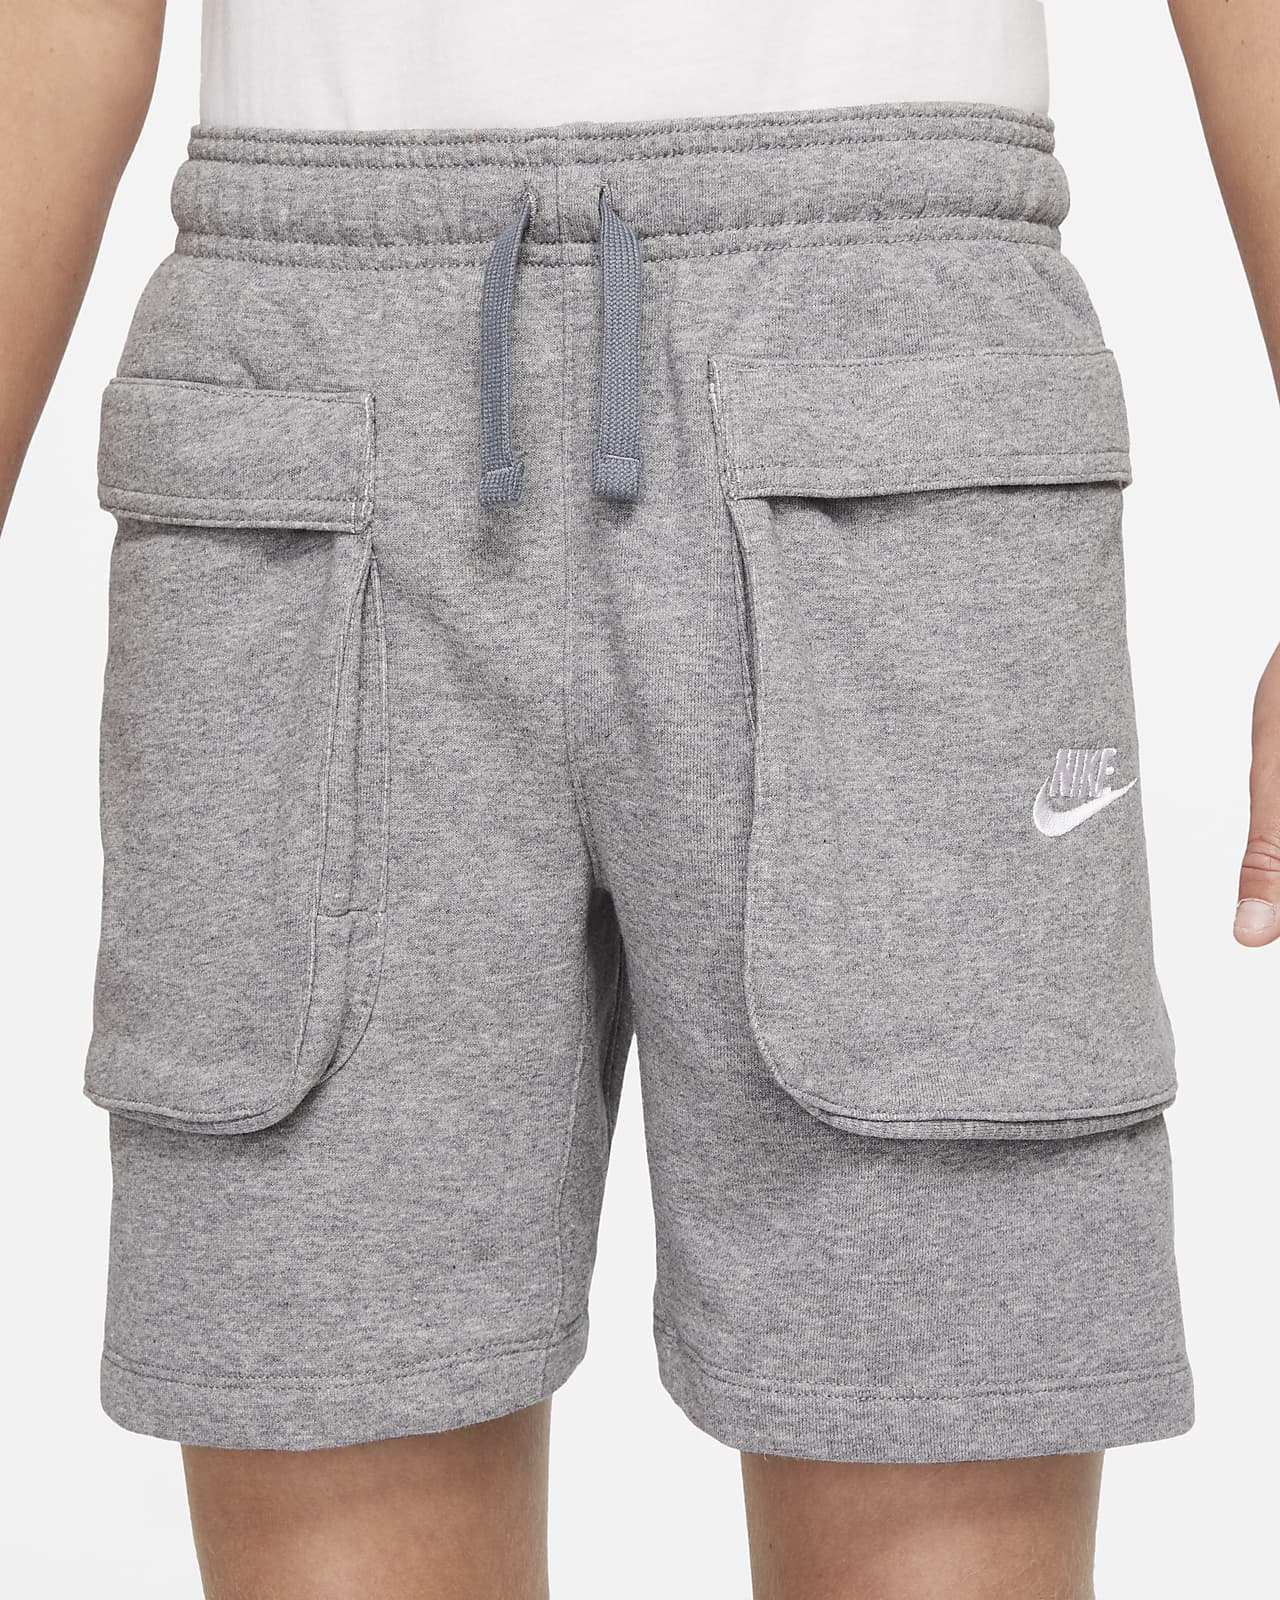 Nike Sportswear corto con bolsillos - Niño. Nike ES